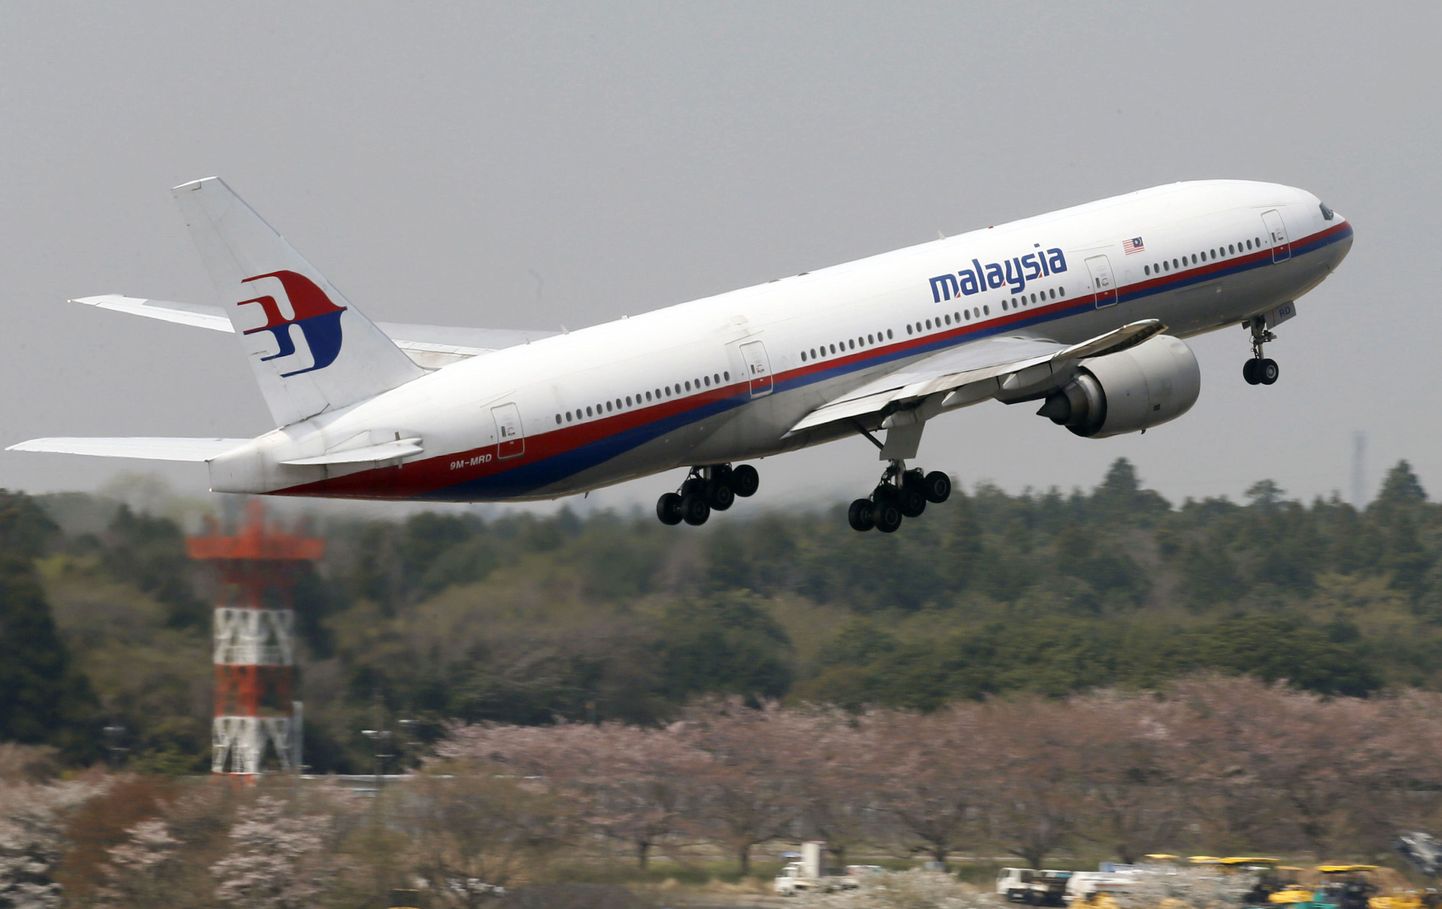 Uus teooria: Malaisia kadunud lennuk varjus teise lennuki taha